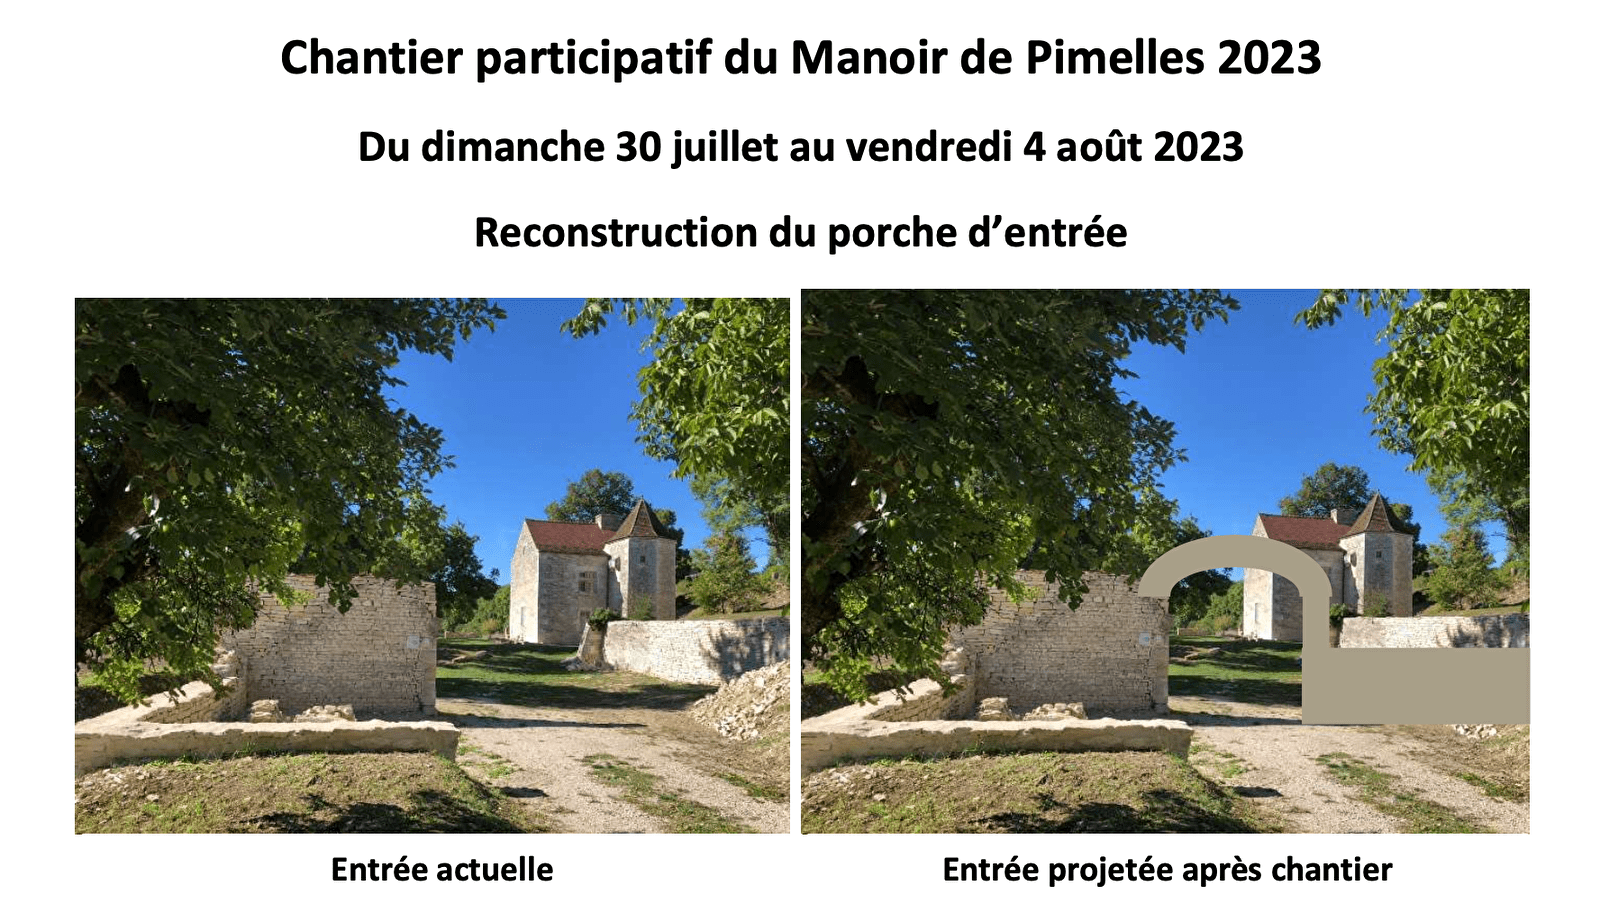 Chantier participatif - Reconstruction du porche d’entrée du  Manoir de Pimelles